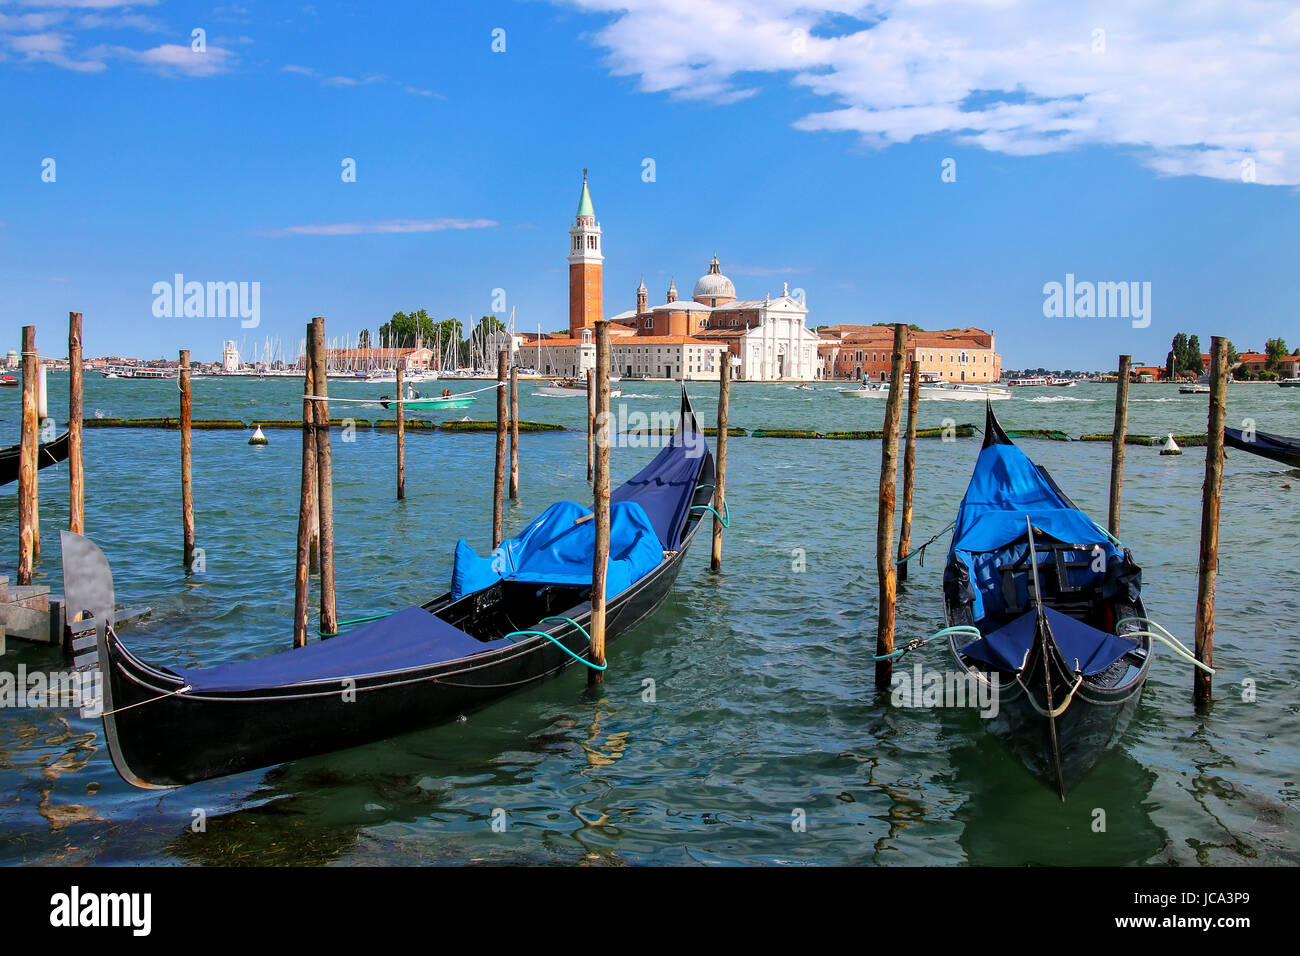 La gondole près de la place San Marco, en face de l'île de San Giorgio Maggiore à Venise, Italie. Gondoles étaient autrefois la principale forme de transport aro Banque D'Images